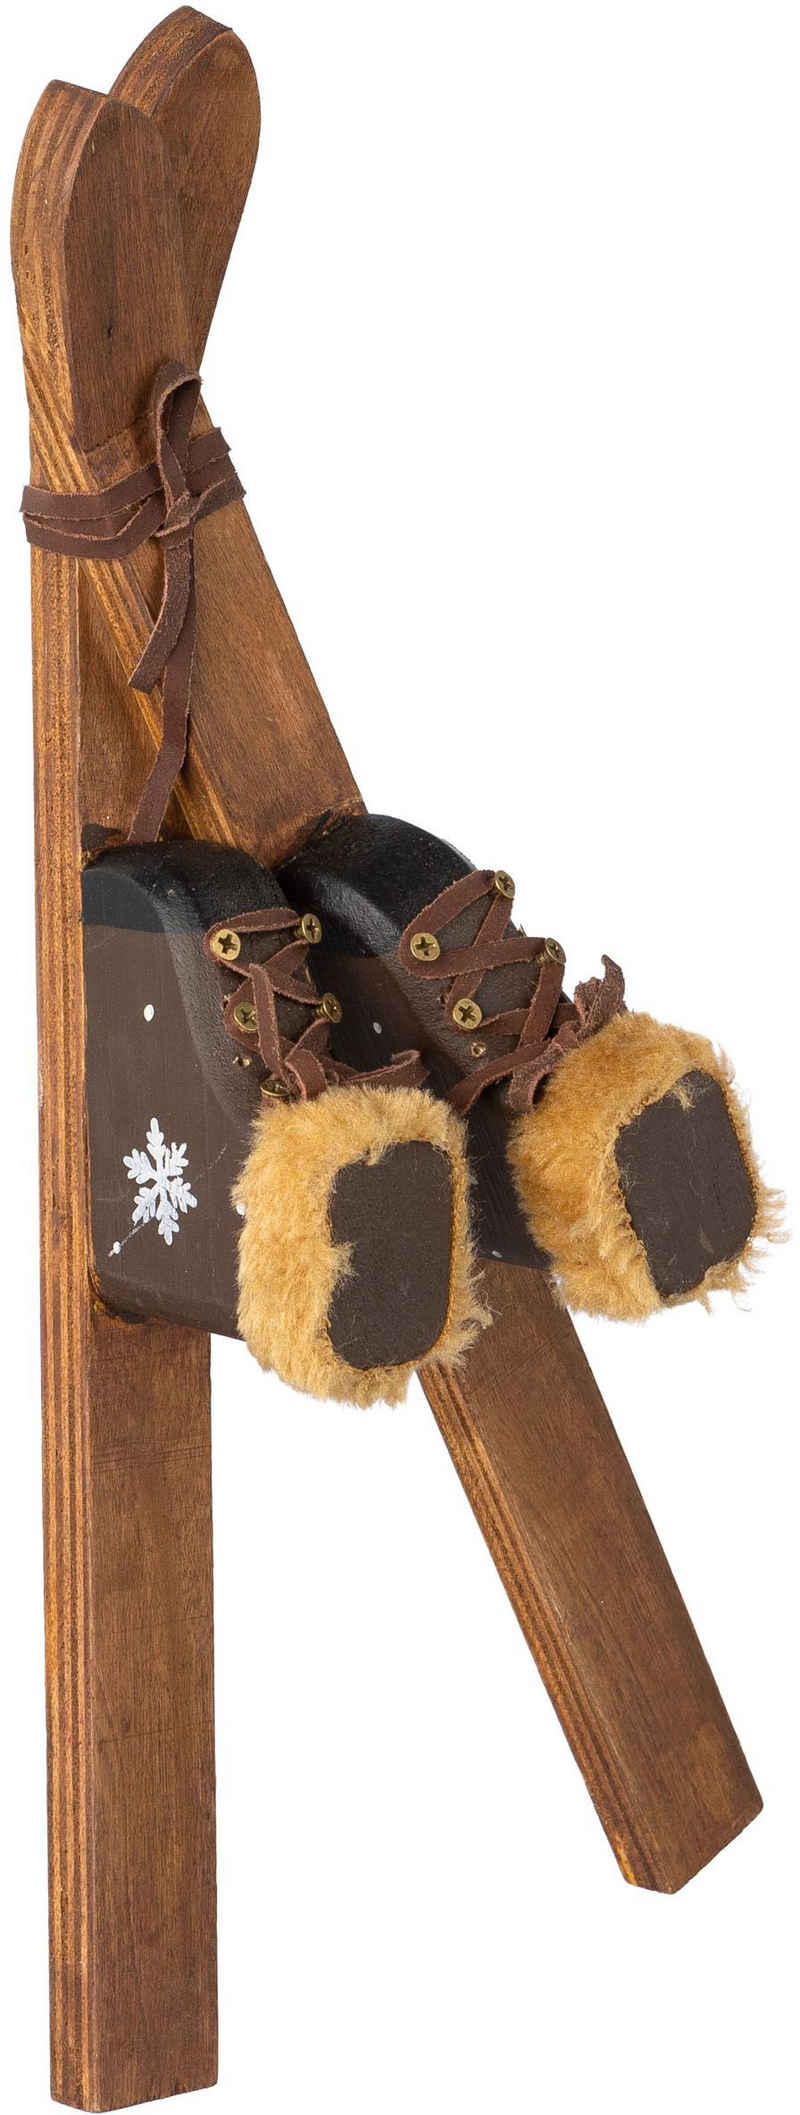 Creativ deco Weihnachtsfigur Weihnachtsdeko (1 St), Deko-Ski-Set aus Holz mit niedlichen Details